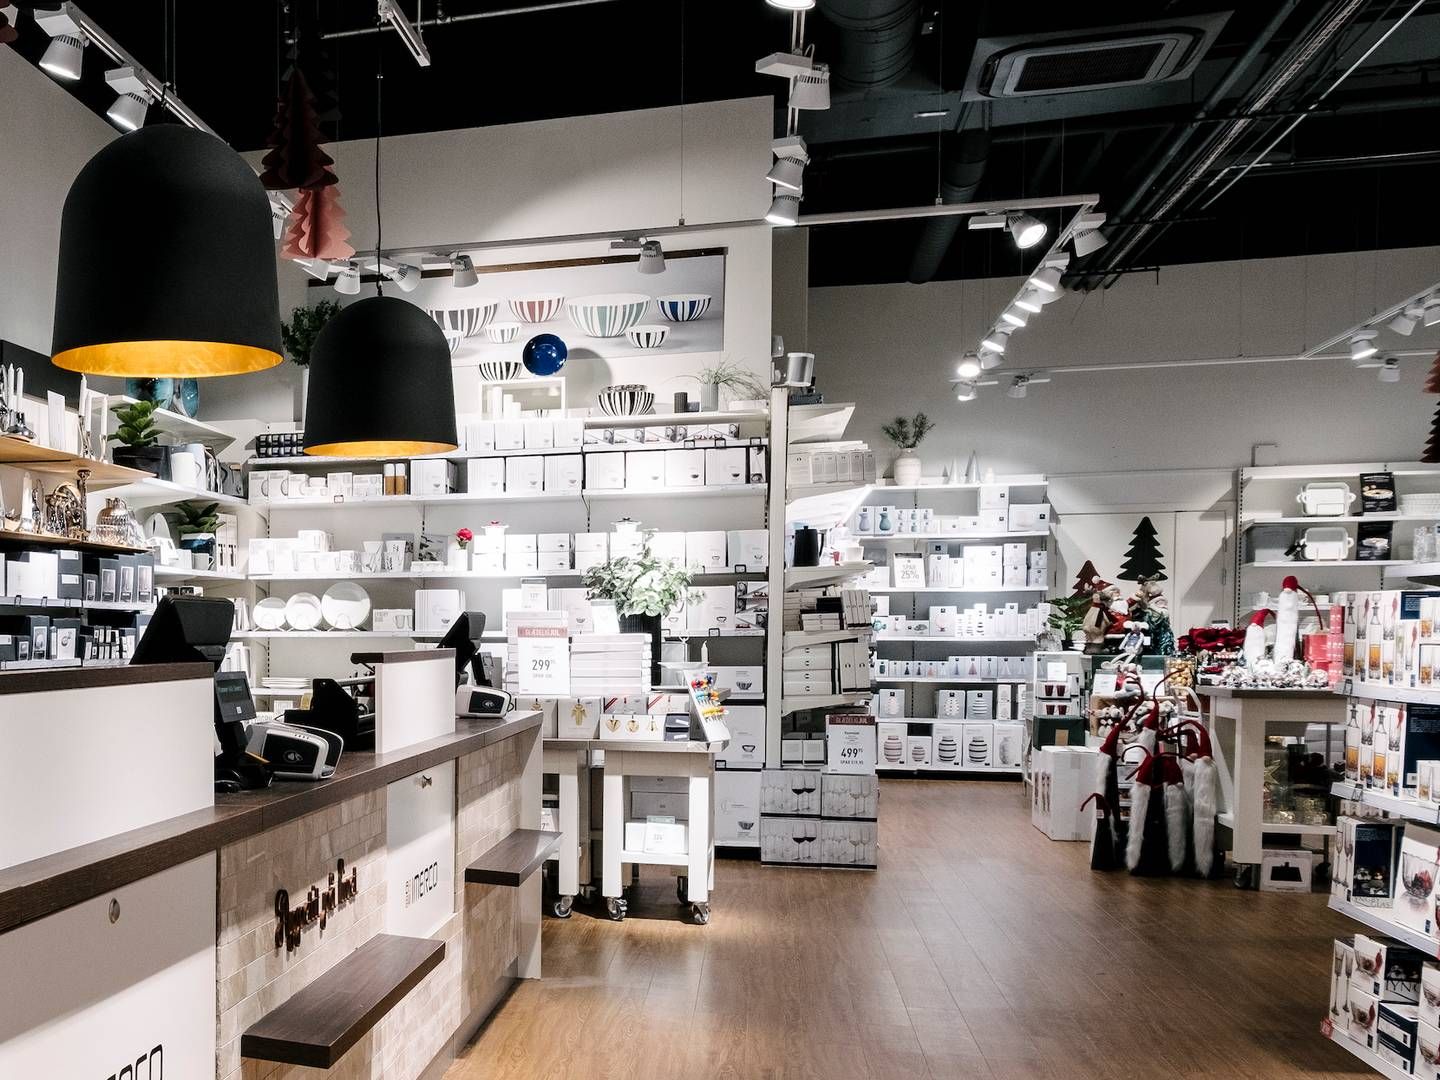 Imerco råder over 166 butikker i Danmark. | Foto: Imerco/pr